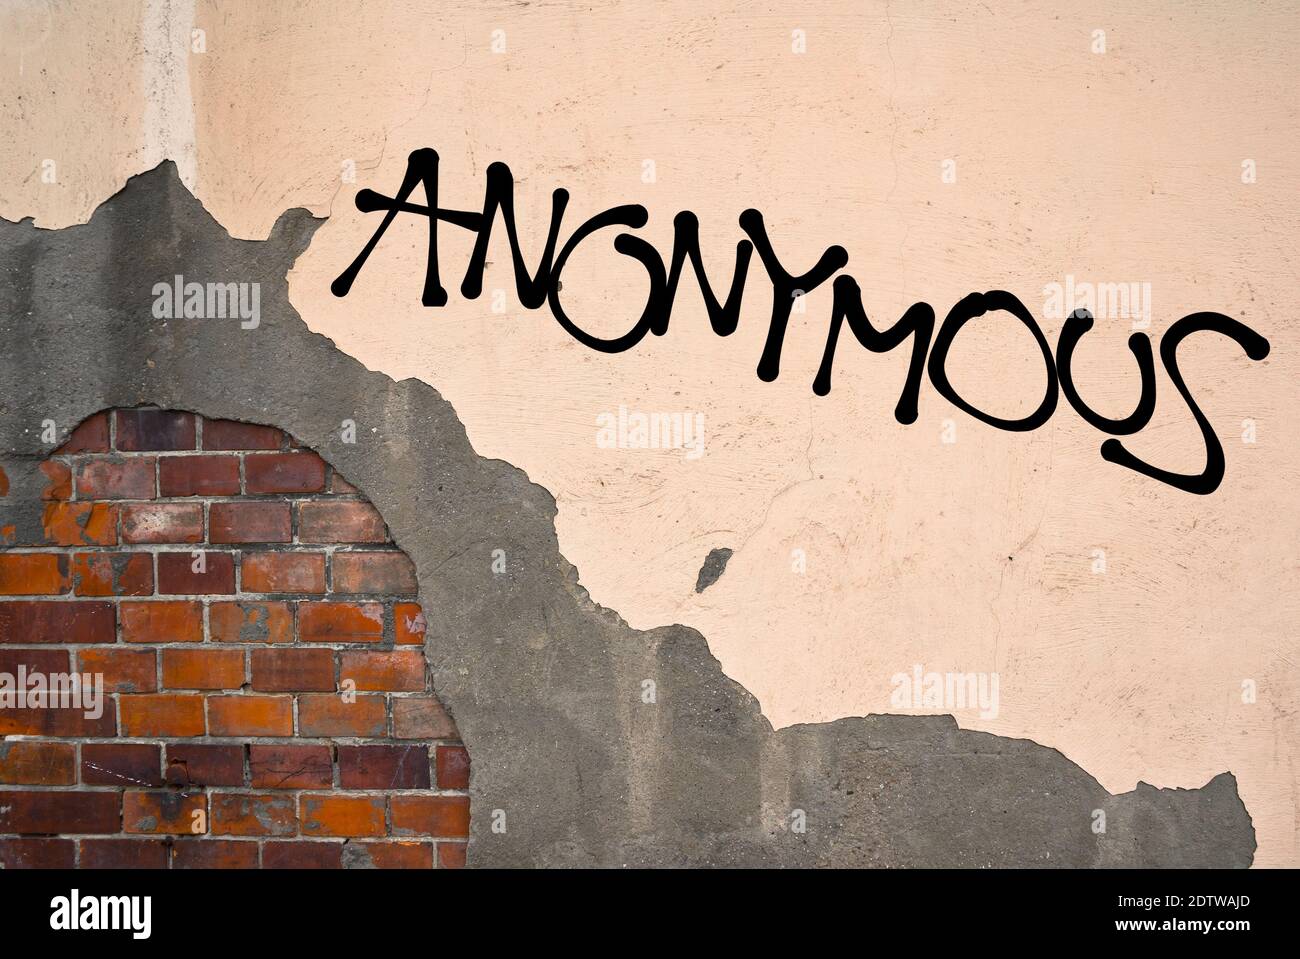 Graffiti scritti a mano Anonimo spruzzato sul muro, estetica anarchica. Sostegno ai cyber terroristi, agli attivisti e agli hacker che attaccano il governo, Foto Stock